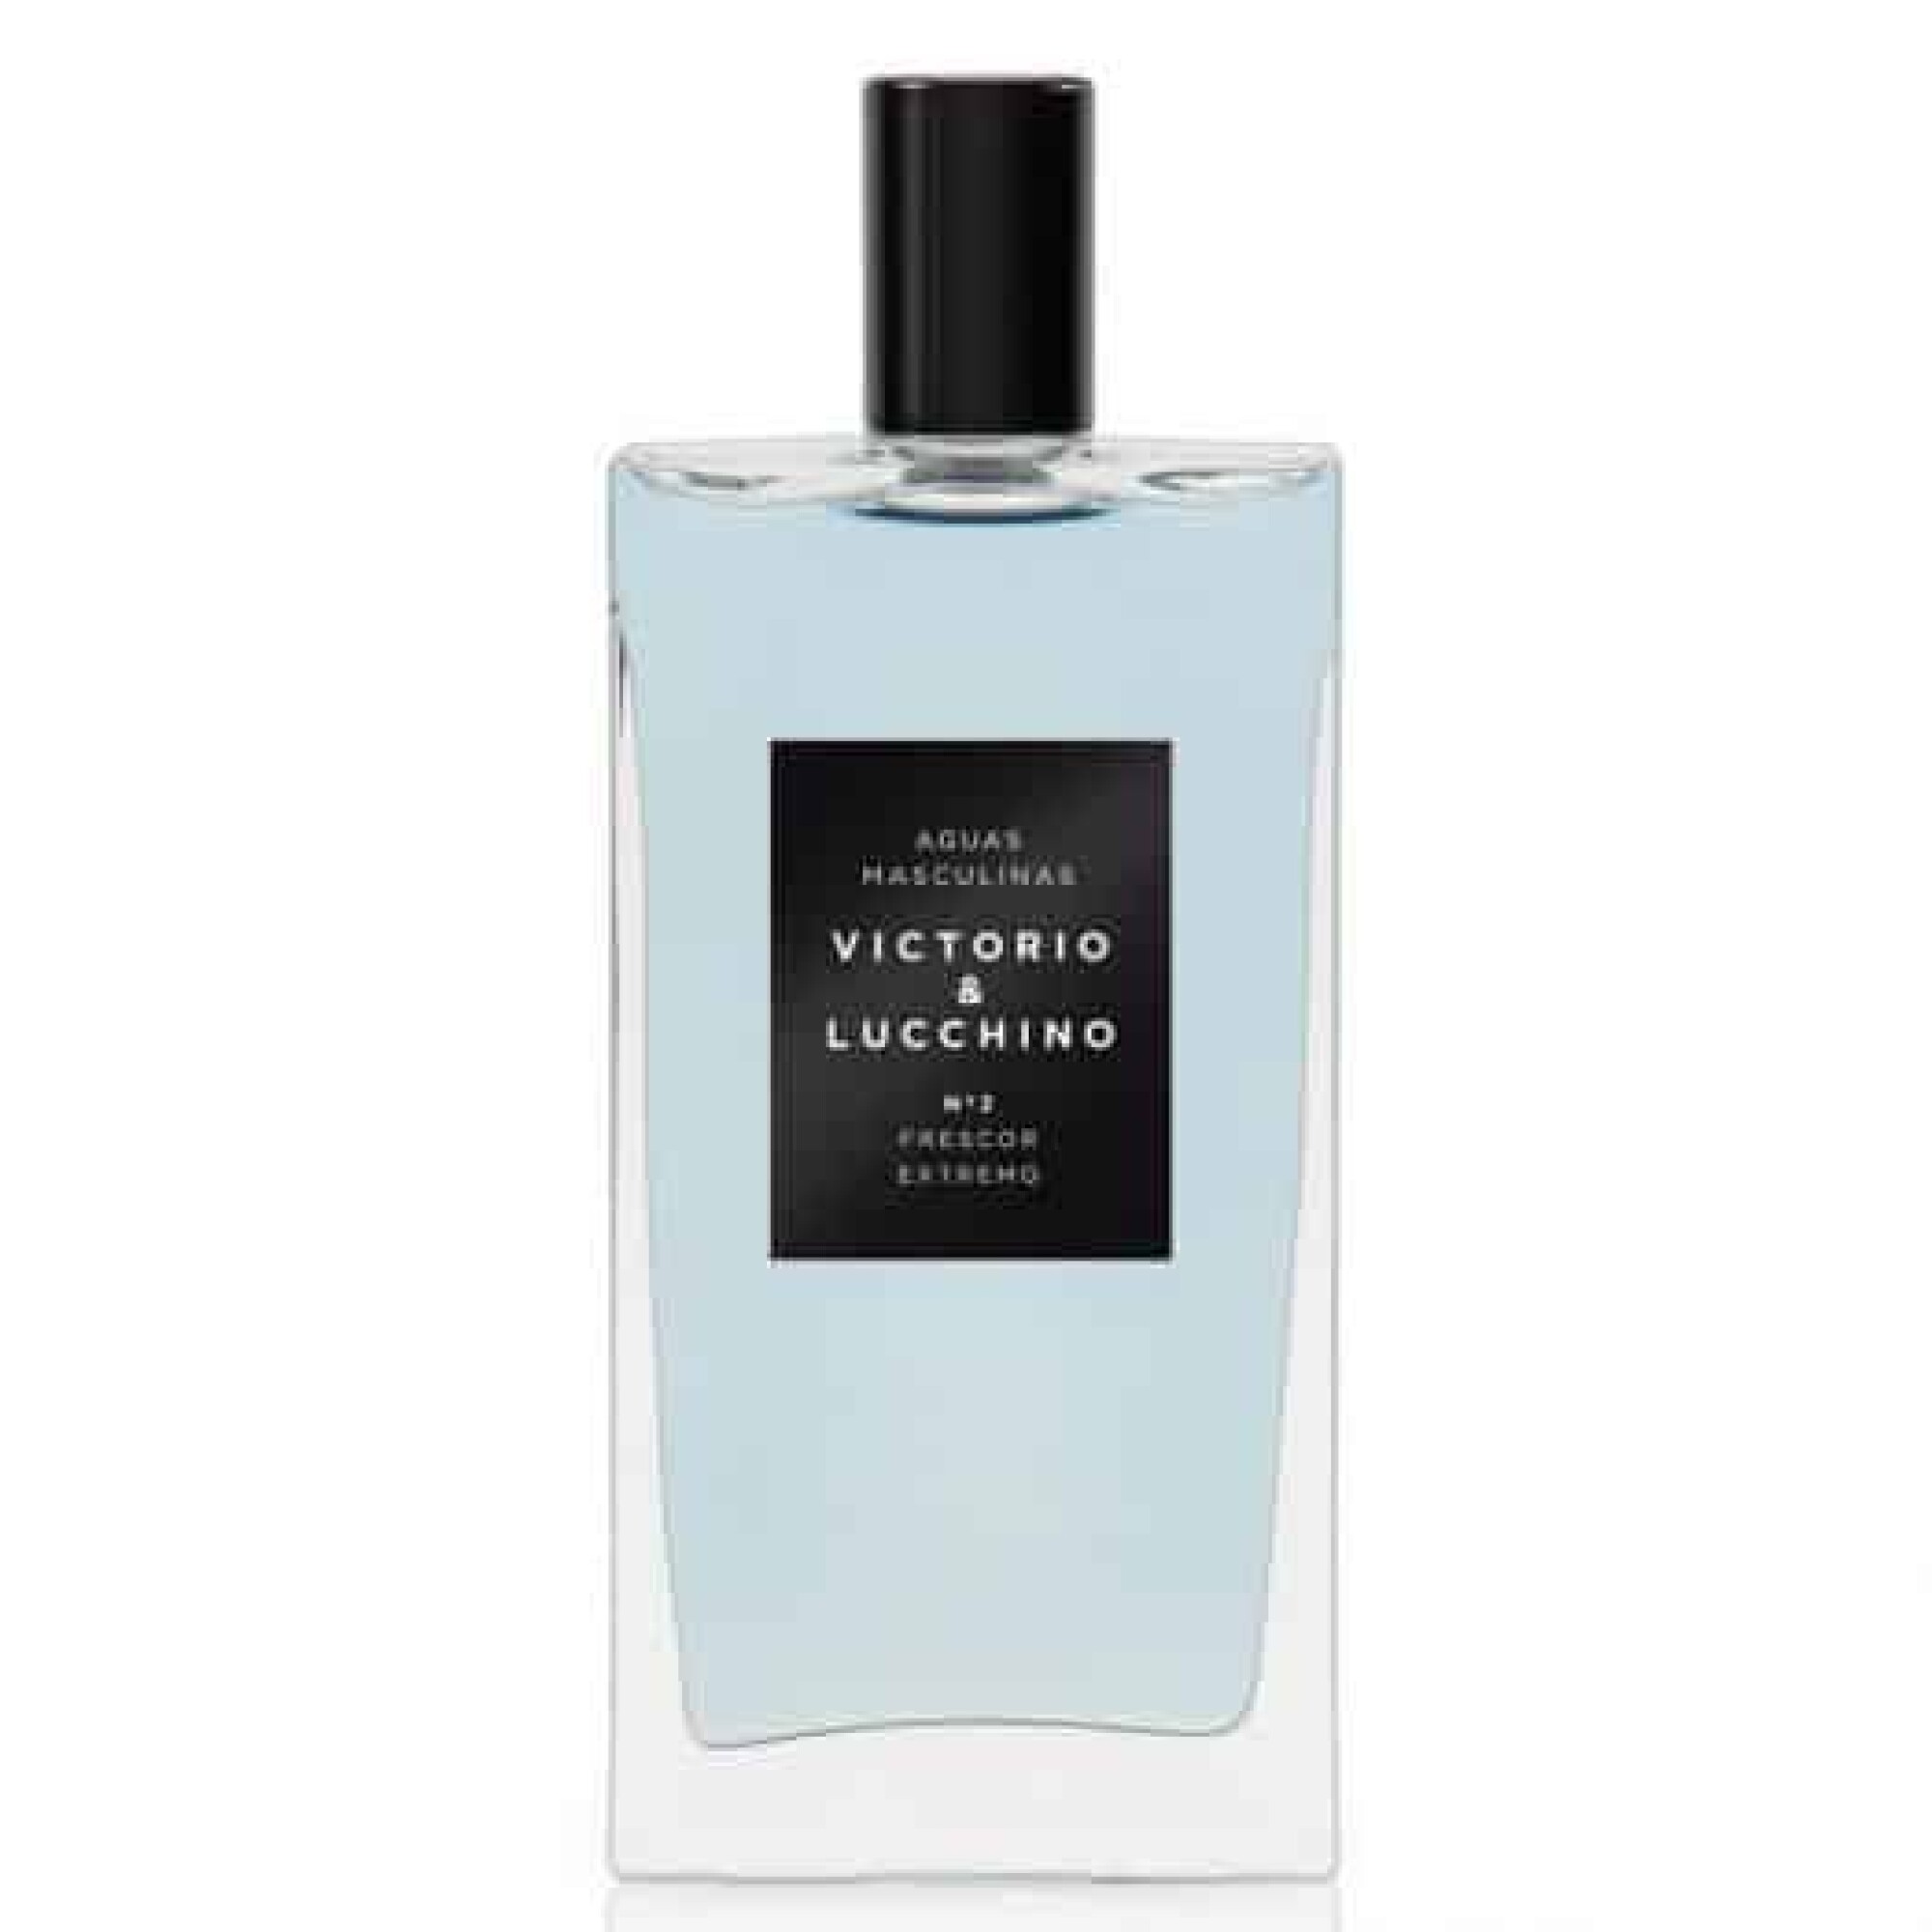 Perfume Victorio & Lucchino Frescor Extremo Edt 150 ml — San Roque